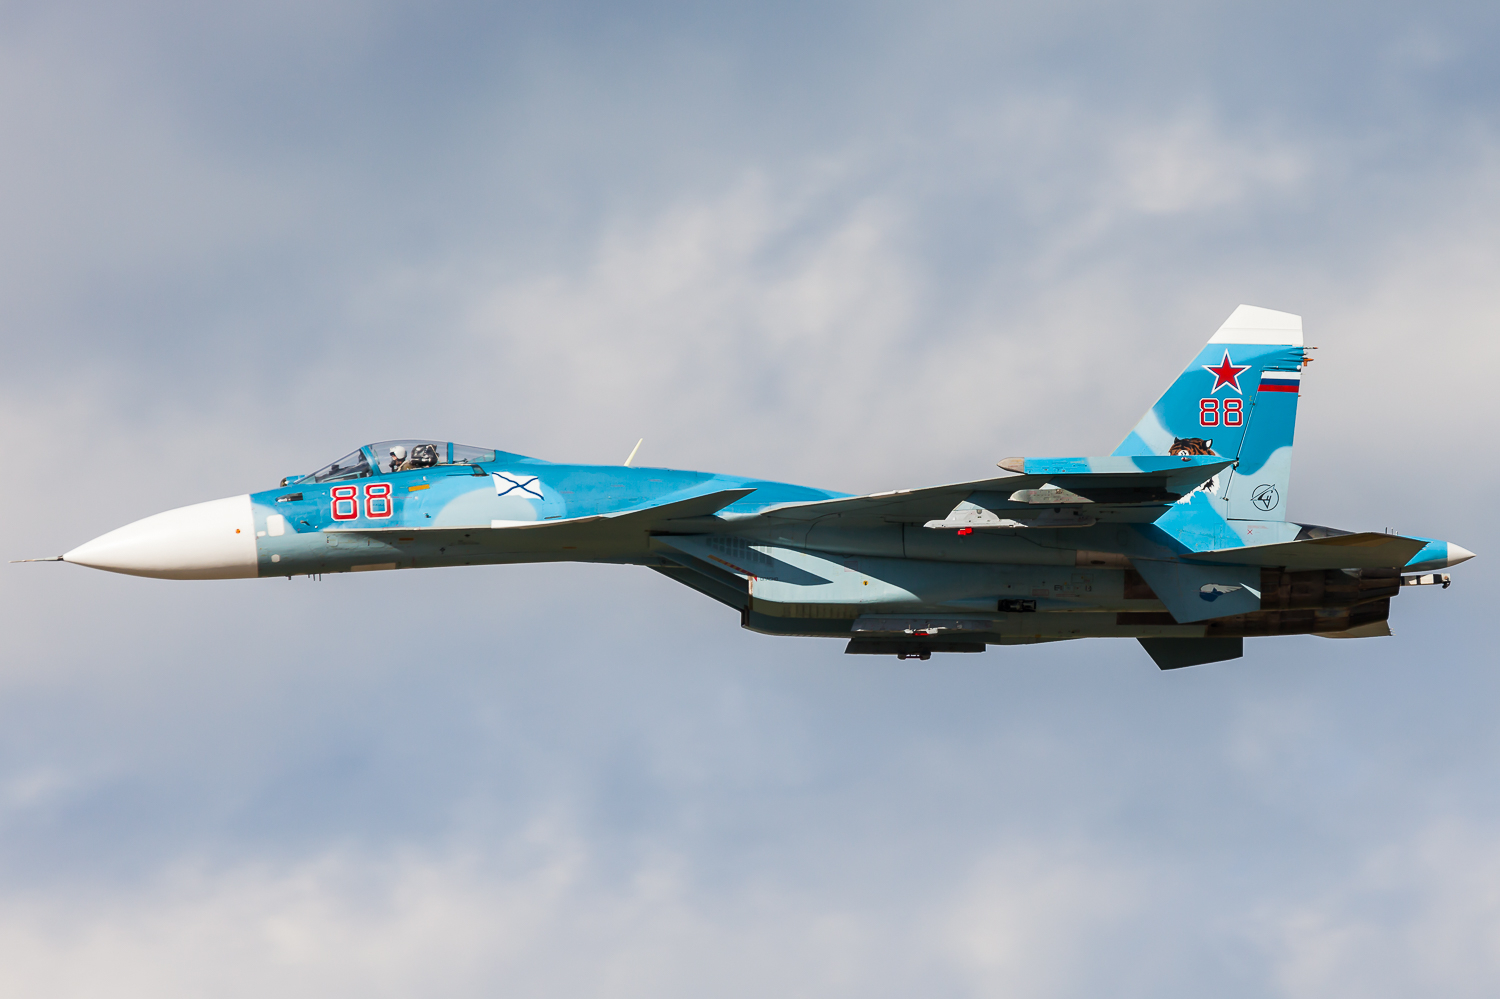 Складывающий крылья Су-33 скоро их расправит